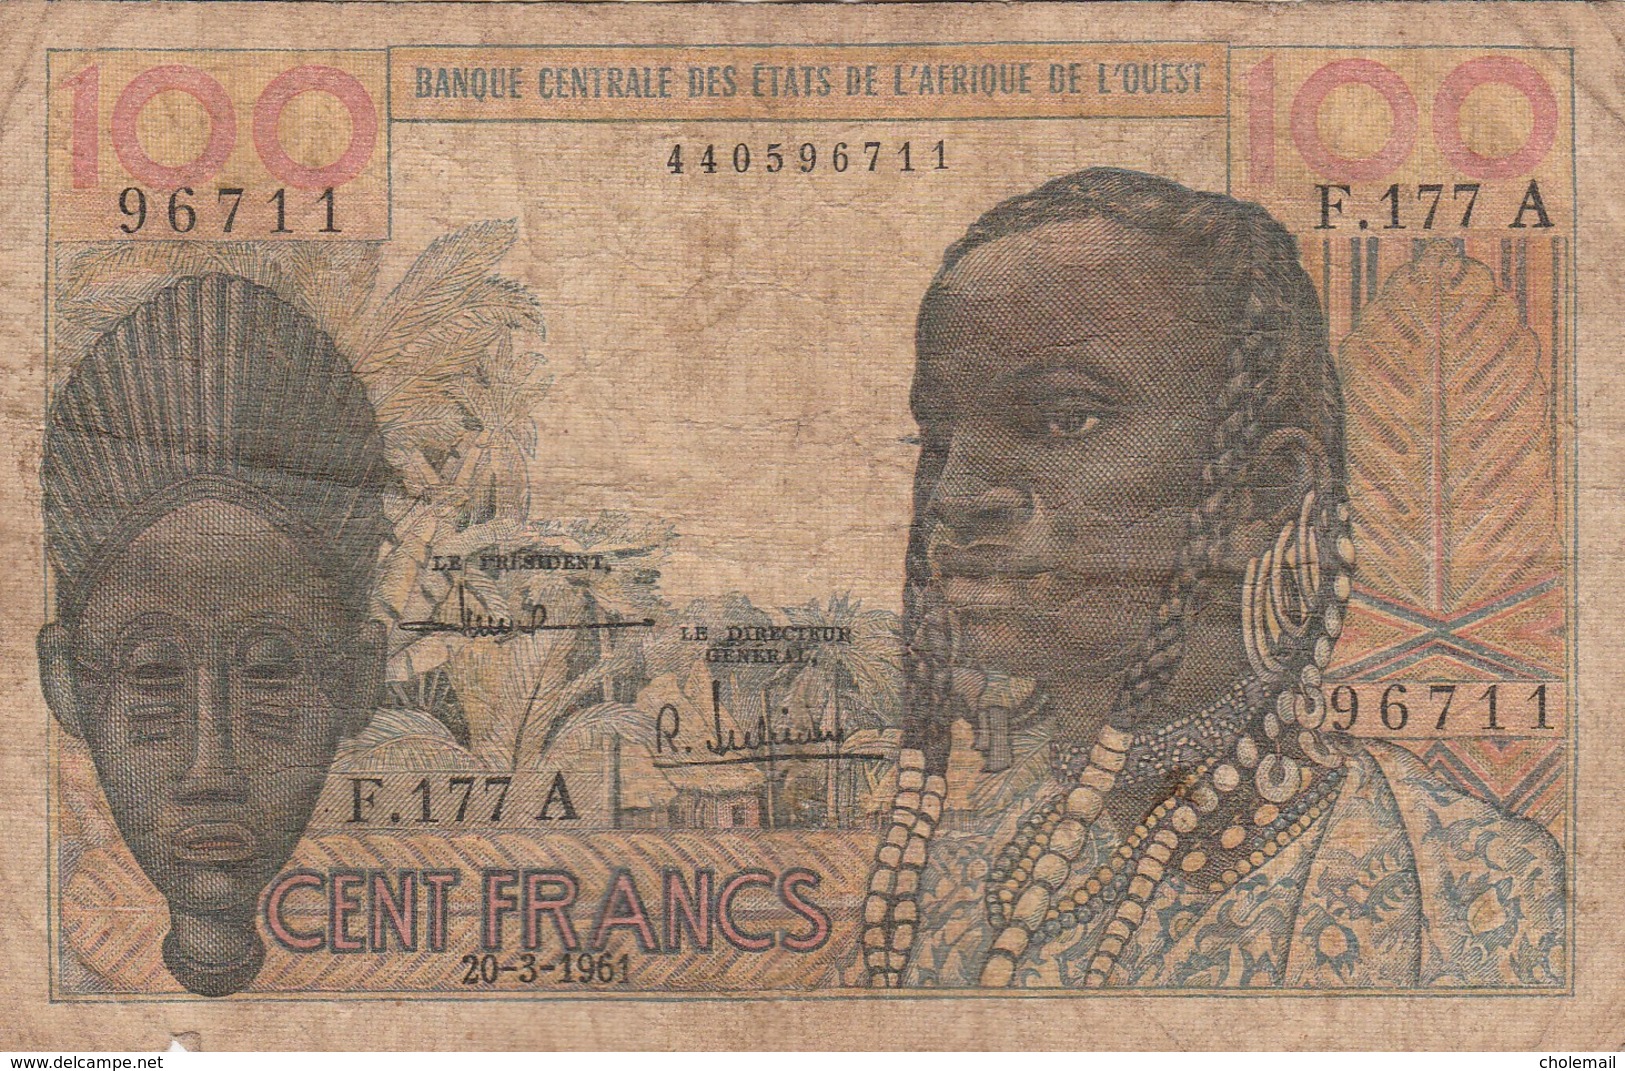 BCEAO - 100 F - Banque Centrale Des Etats De L'Afrique De L'Ouest - 20/03/1961 - États D'Afrique De L'Ouest